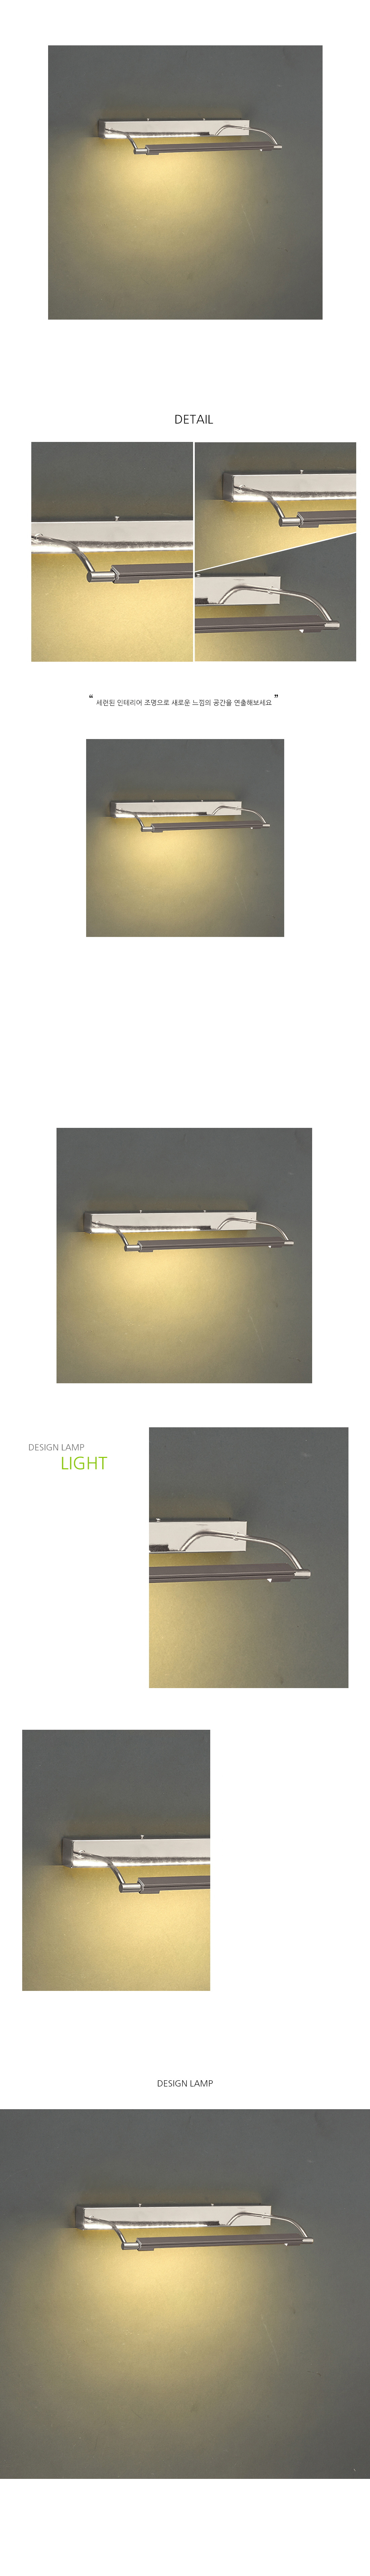 [LED 4W] 클라시 그림 벽등 (I형)-크롬